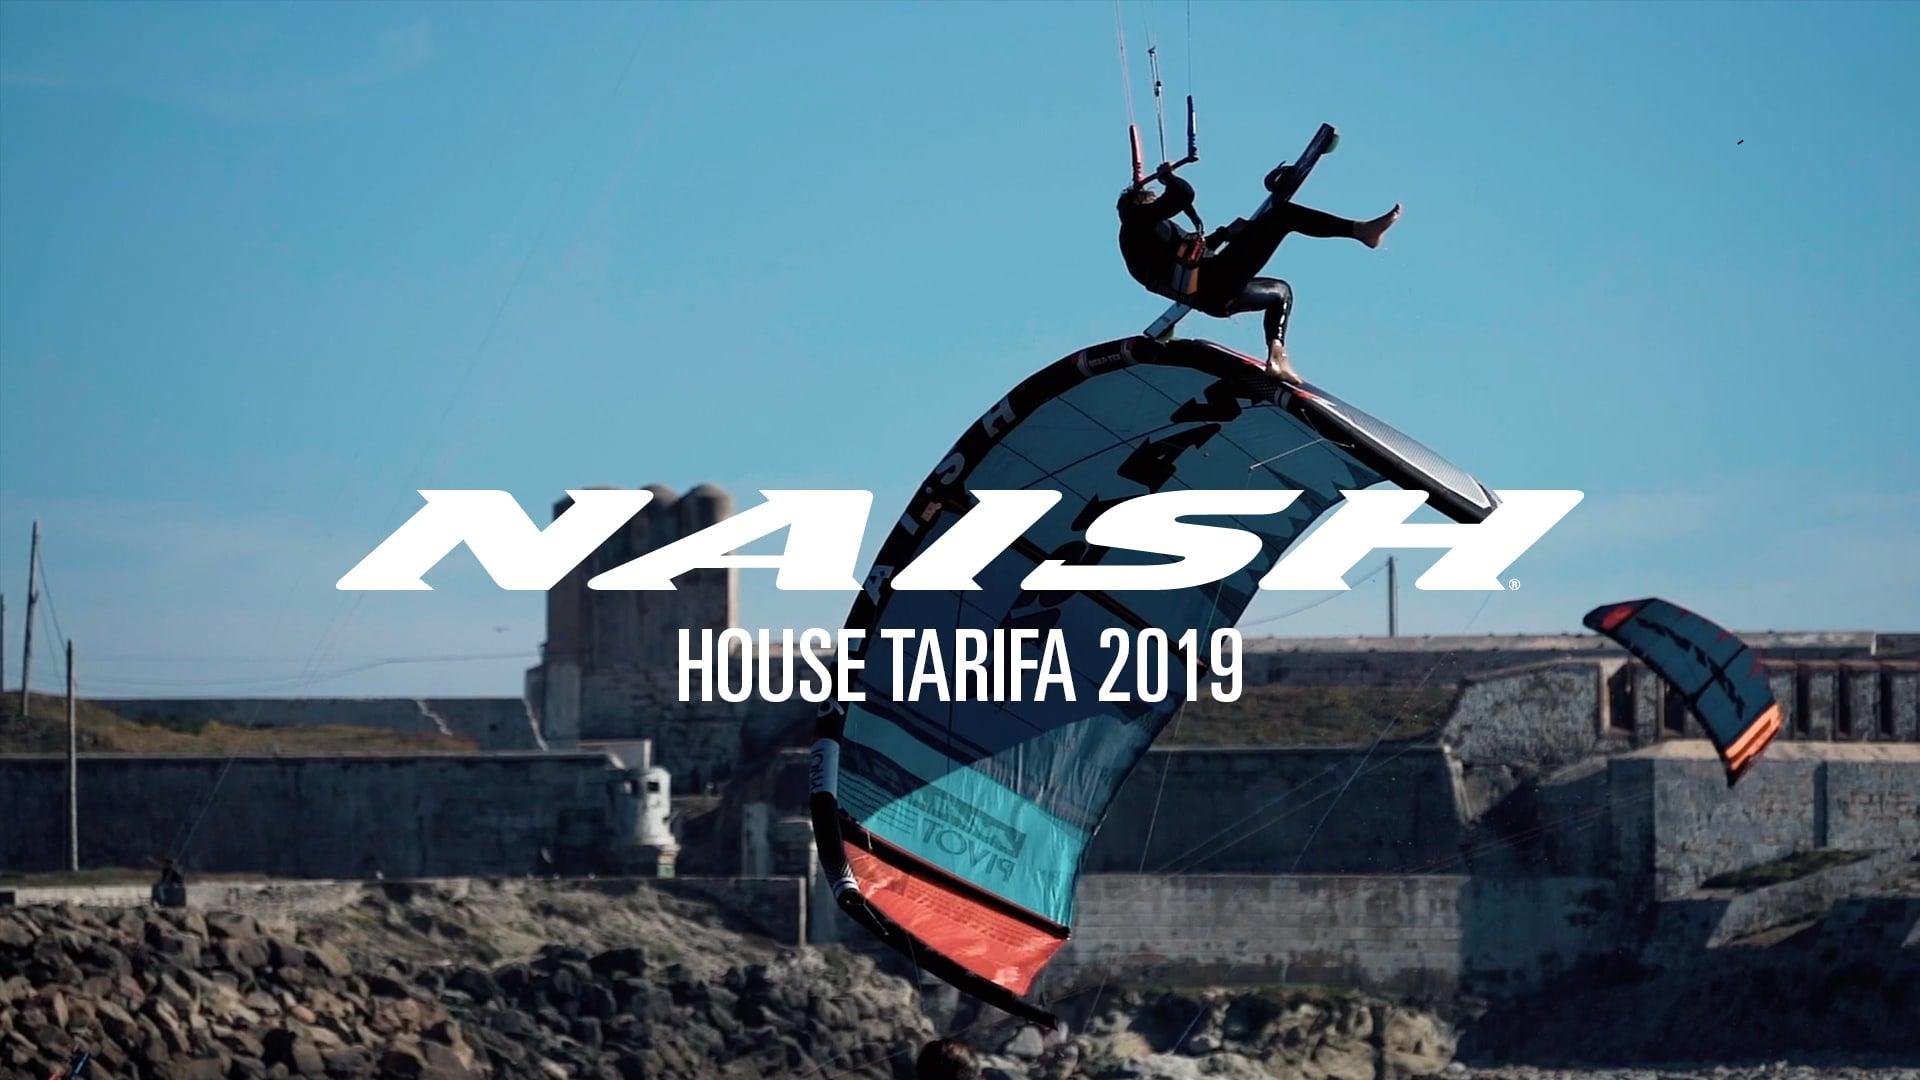 Naish House Tarifa 2019 - Naish.com